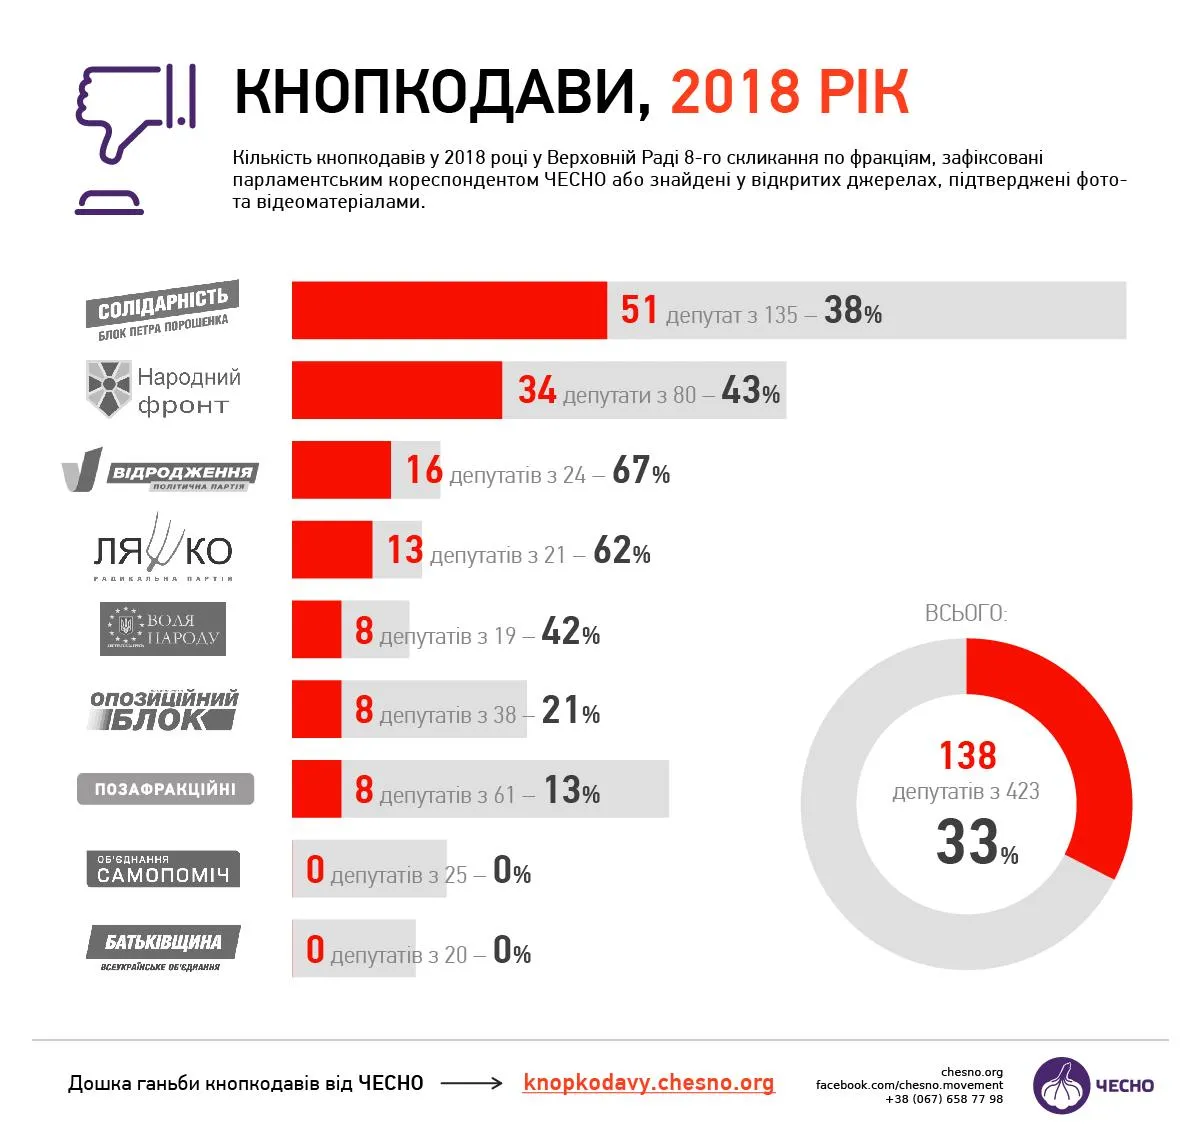 кнопкодави 2018 верховна рада депутати інфографіка